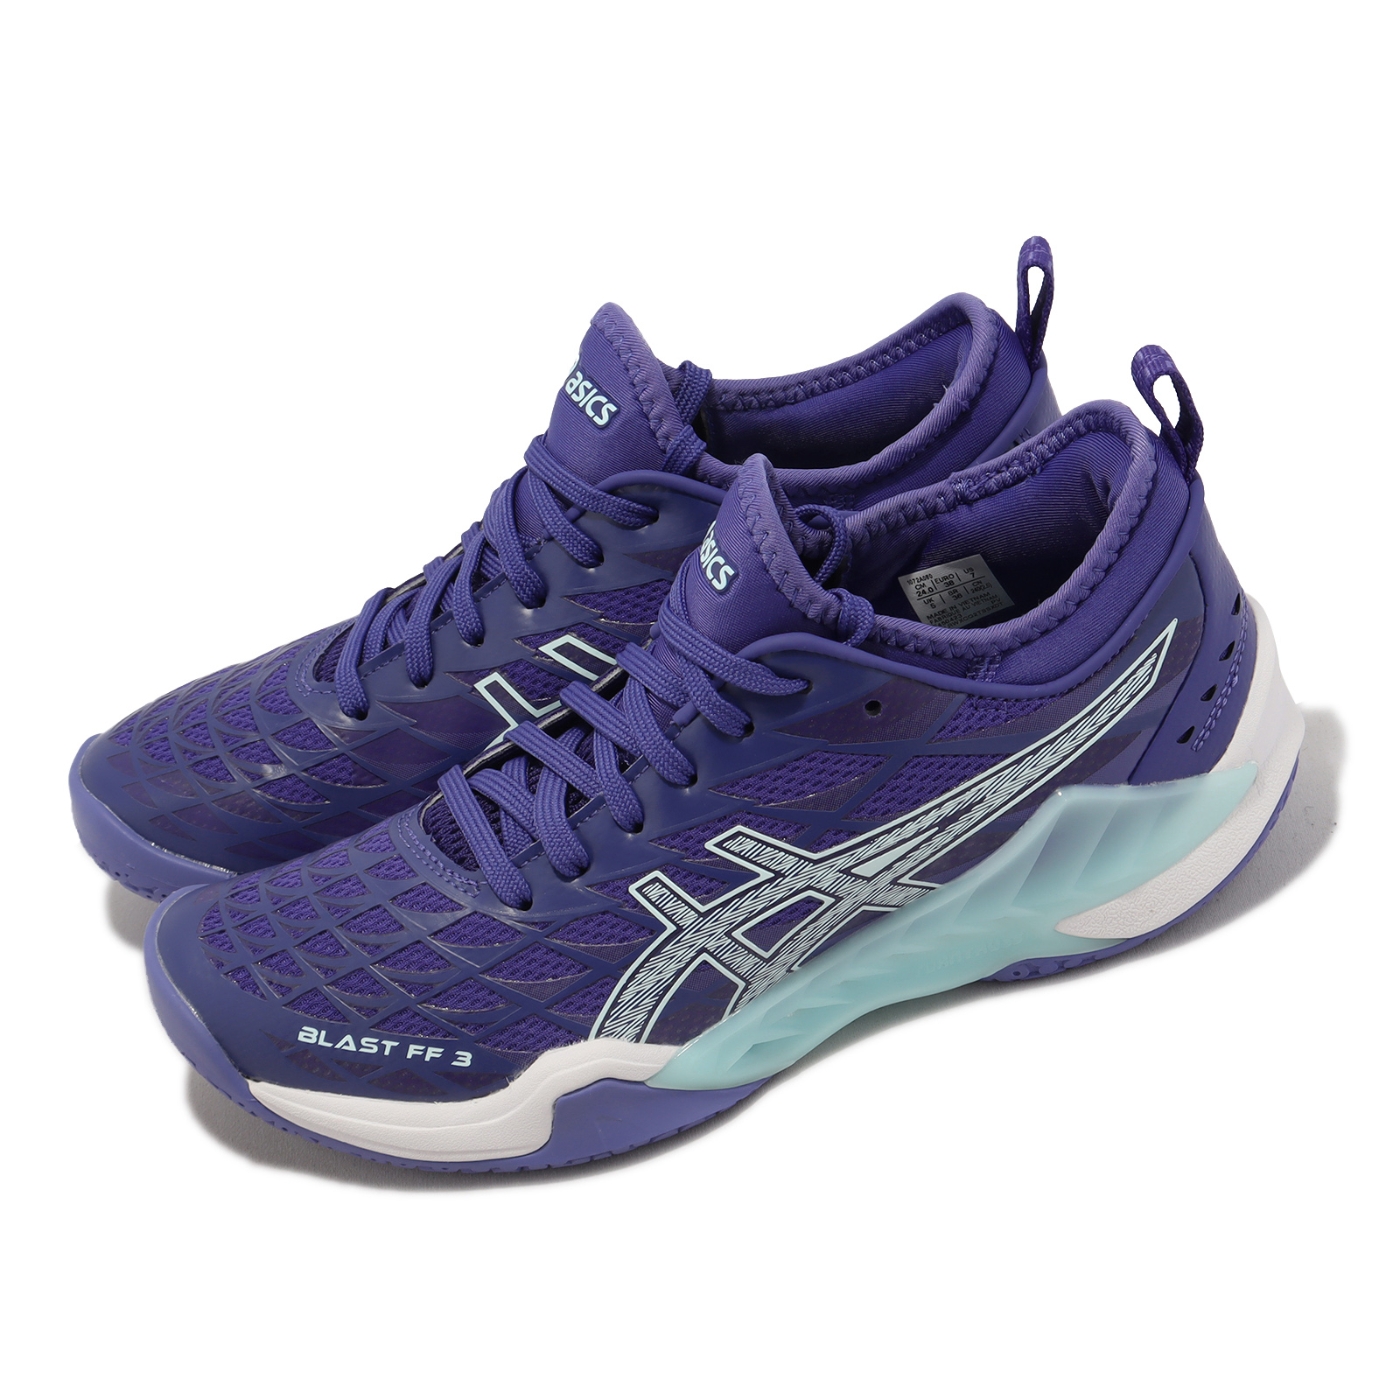 Asics 羽球鞋Blast FF 3 女鞋紫藍白支撐穩定襪套式運動鞋亞瑟士 